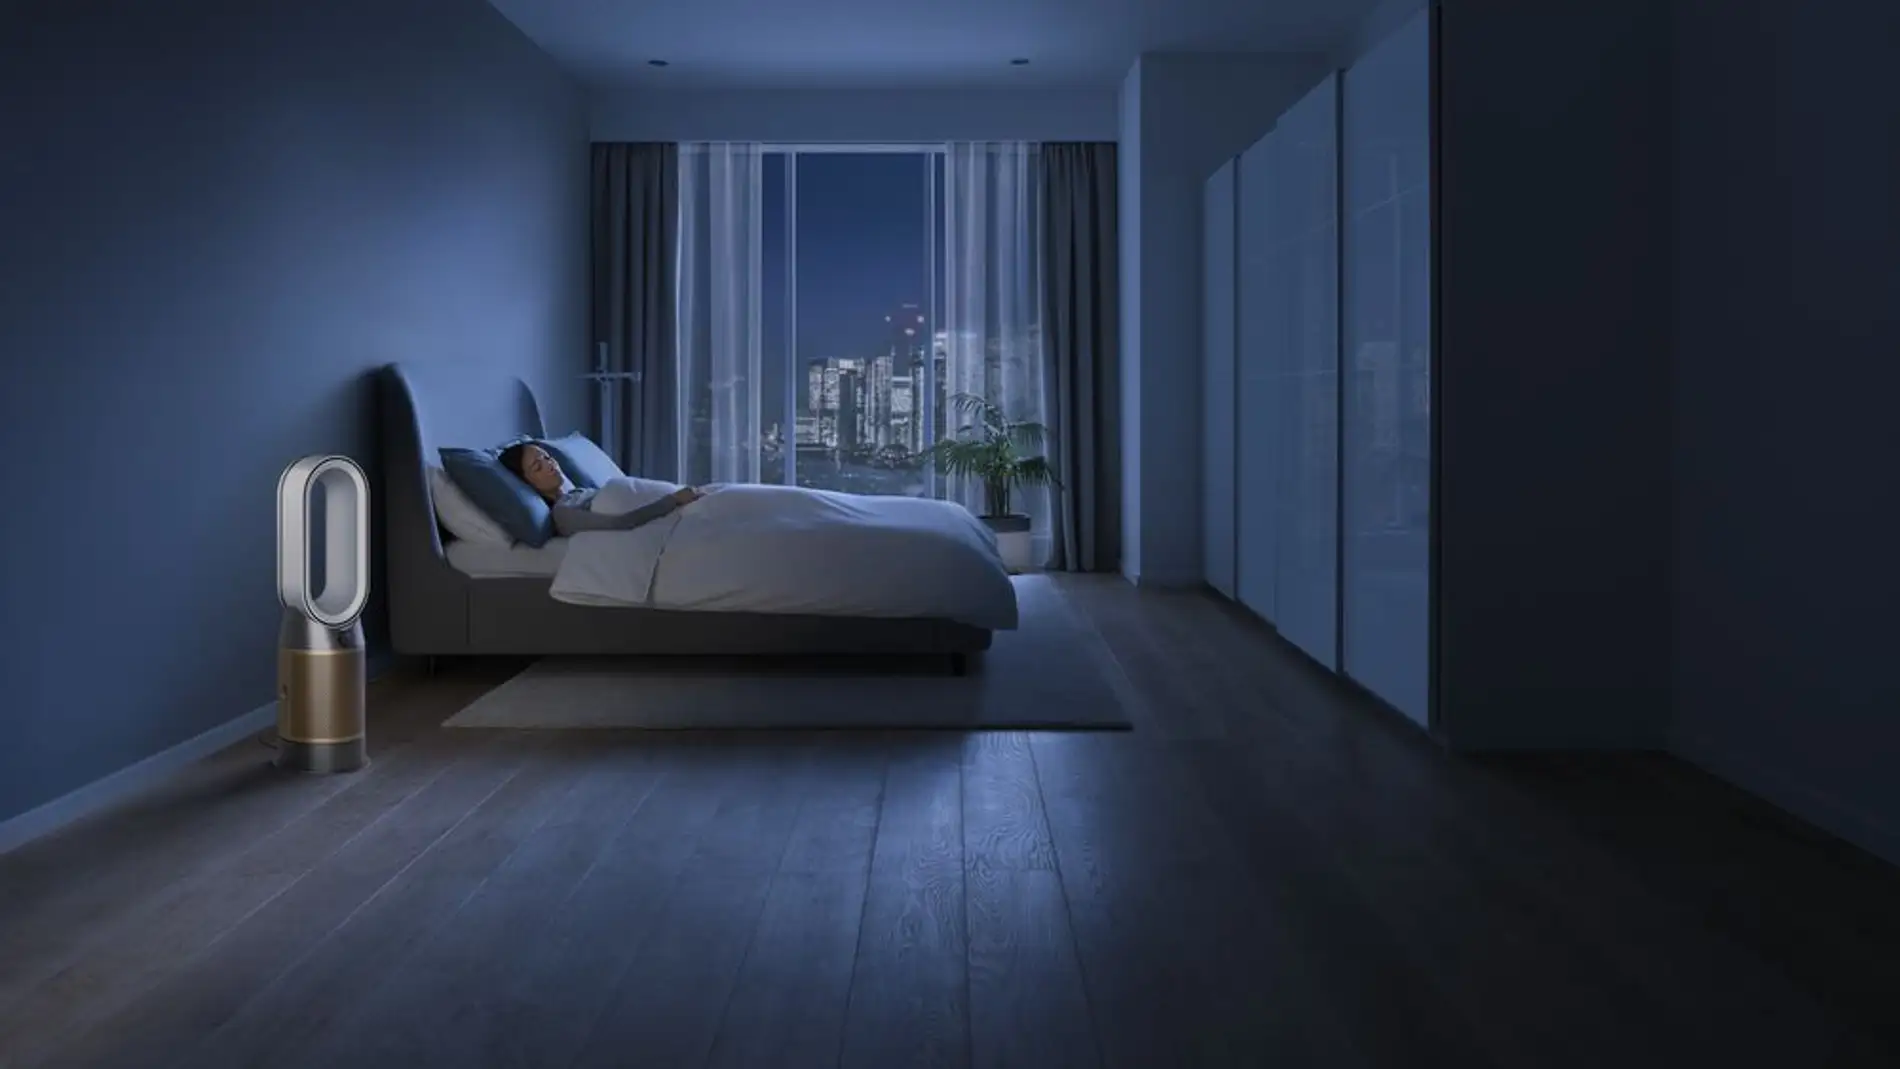 Dormir mejor gracias a la purificación: así puedes aumentar la calidad del aire para un sueño reparador